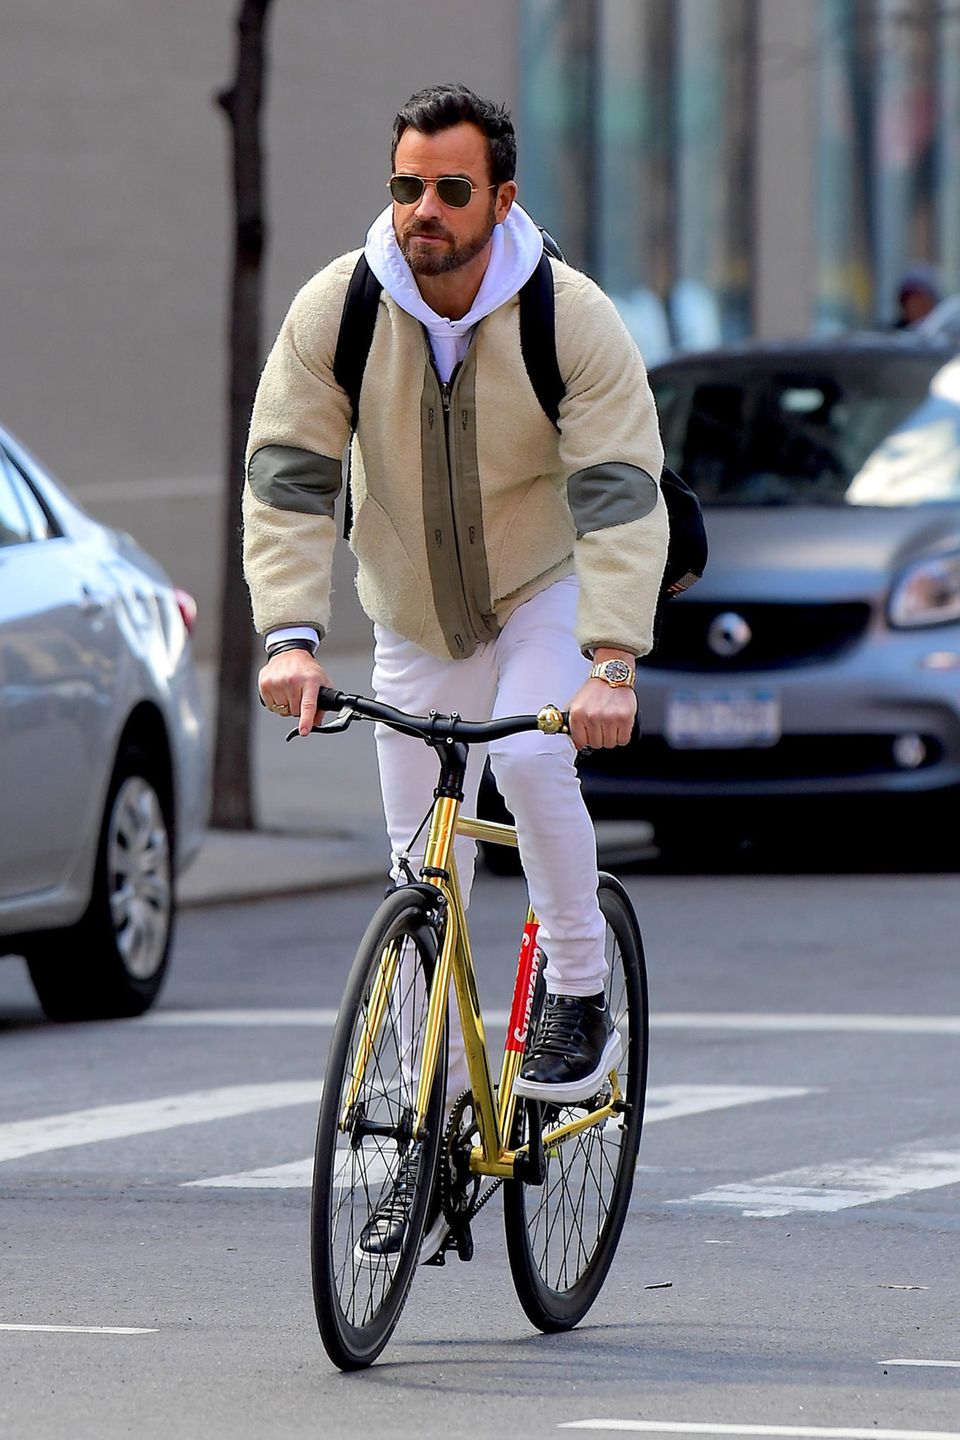 Die Straßen von New York sind verstopft mit Autos, Justin Theroux macht es genau richtig und nimmt das Fahrrad, um von A nach B zu kommen. Nur einen Helm sollte er sich und seiner Sicherheit unbedingt noch gönnen.